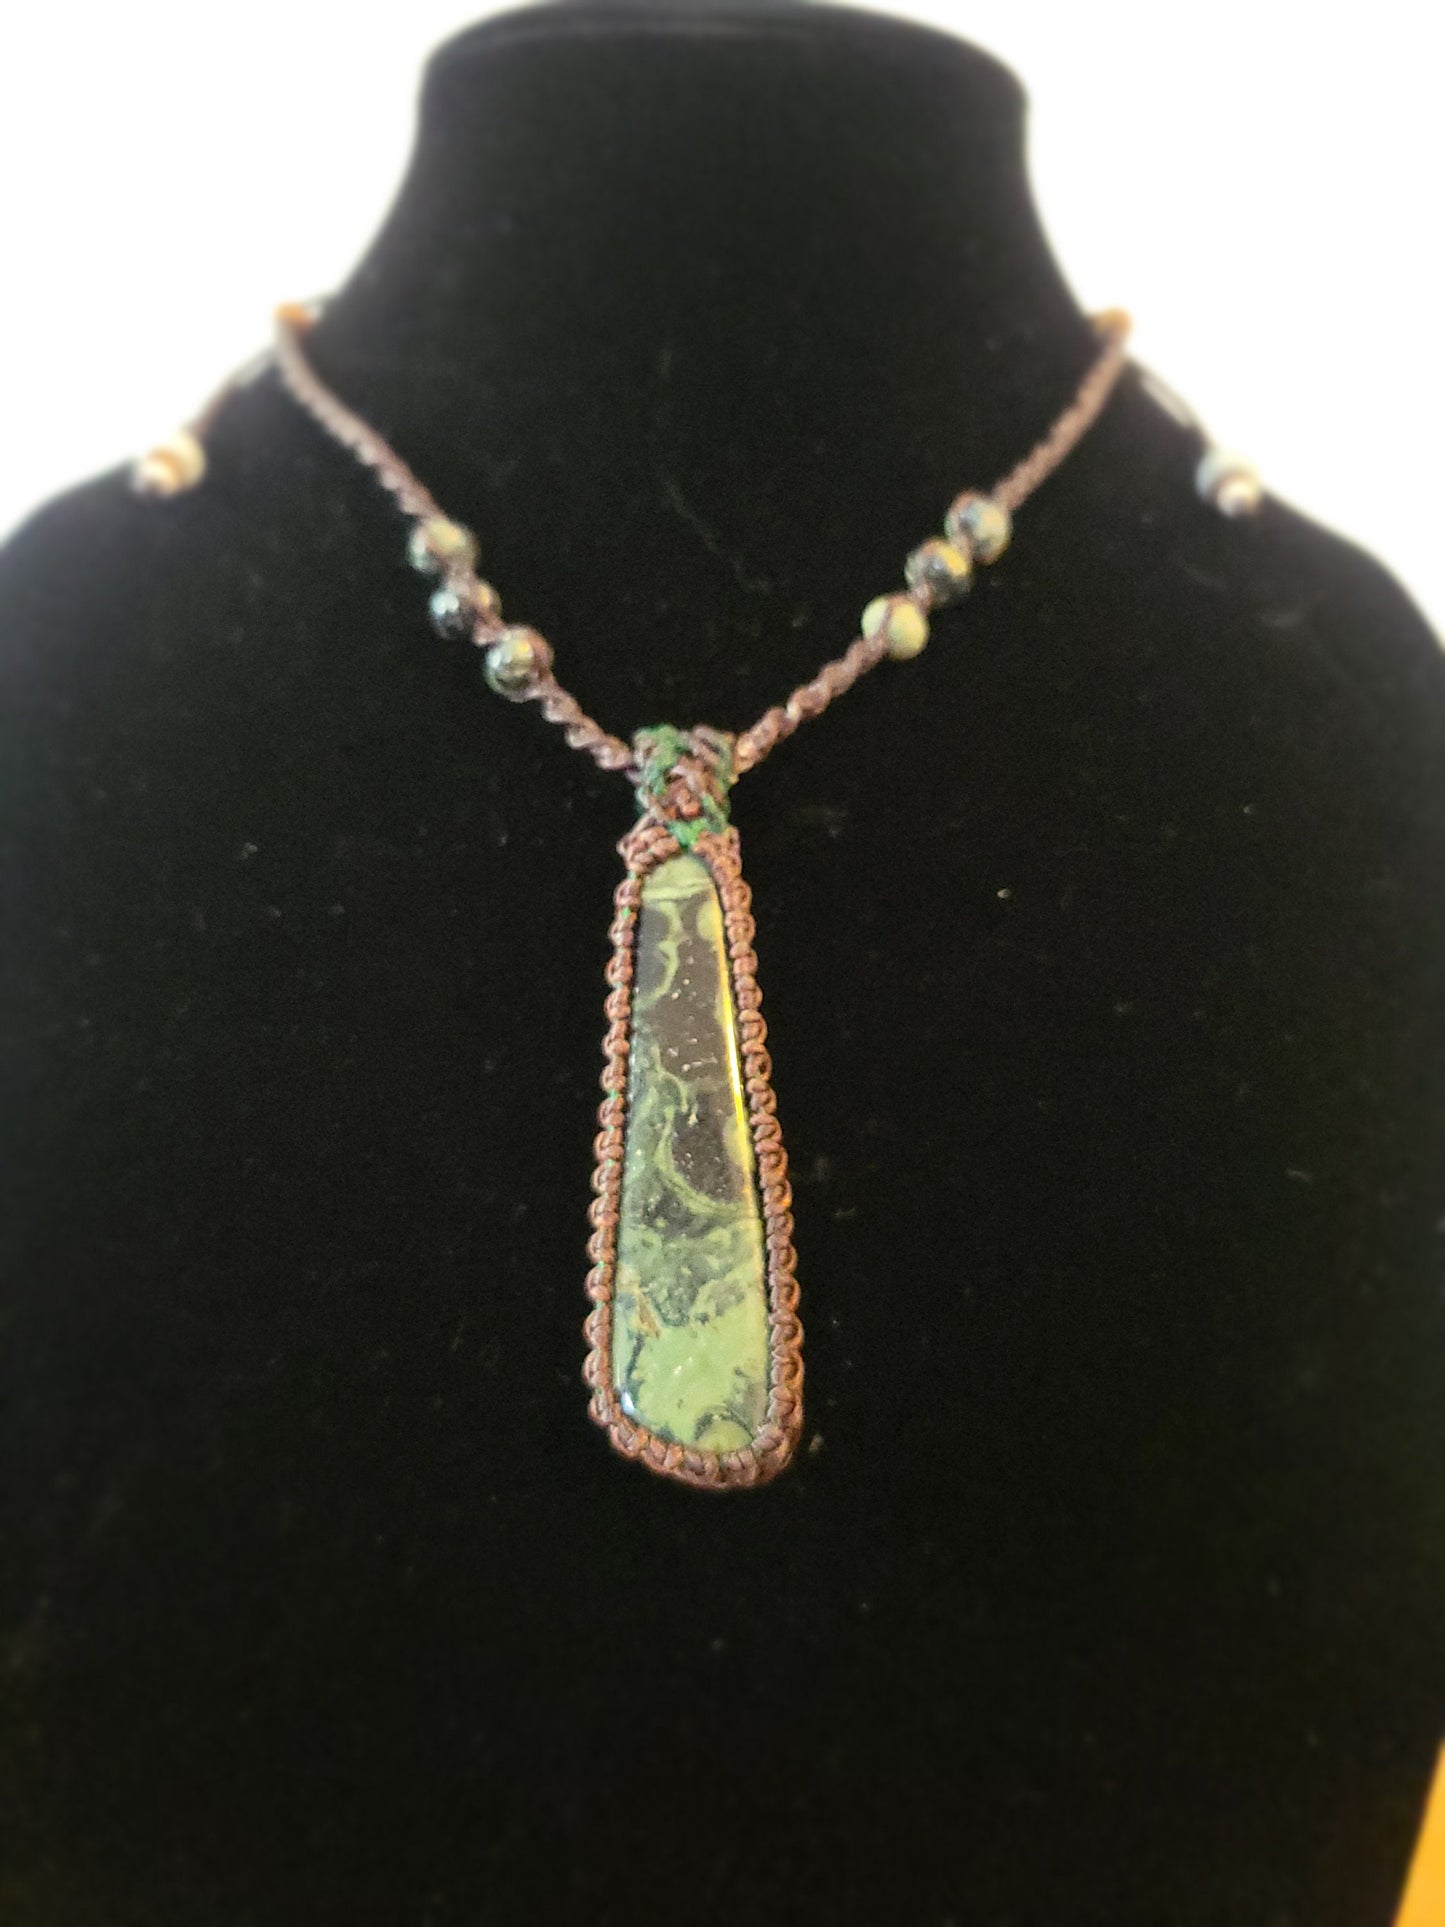 Kambaba Jasper Pendant - Healing Stone Necklace - Adjustable, Sustainable, Ethical